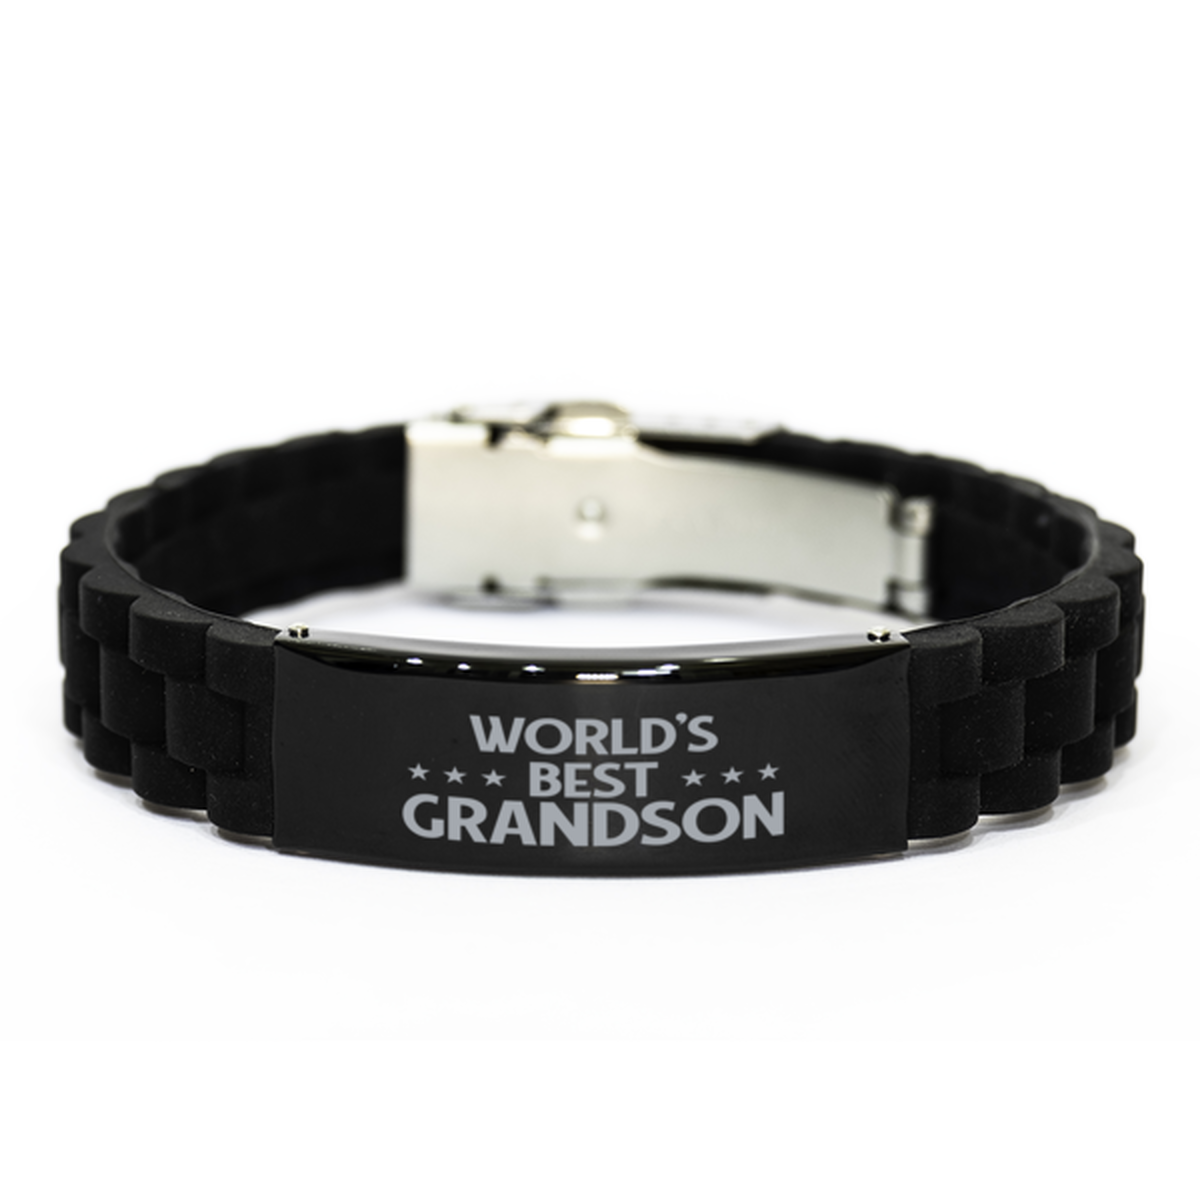 World's Best Grandson Gifts, Funny Black Engraved Bracelet For Grandson, Family Gifts For Men